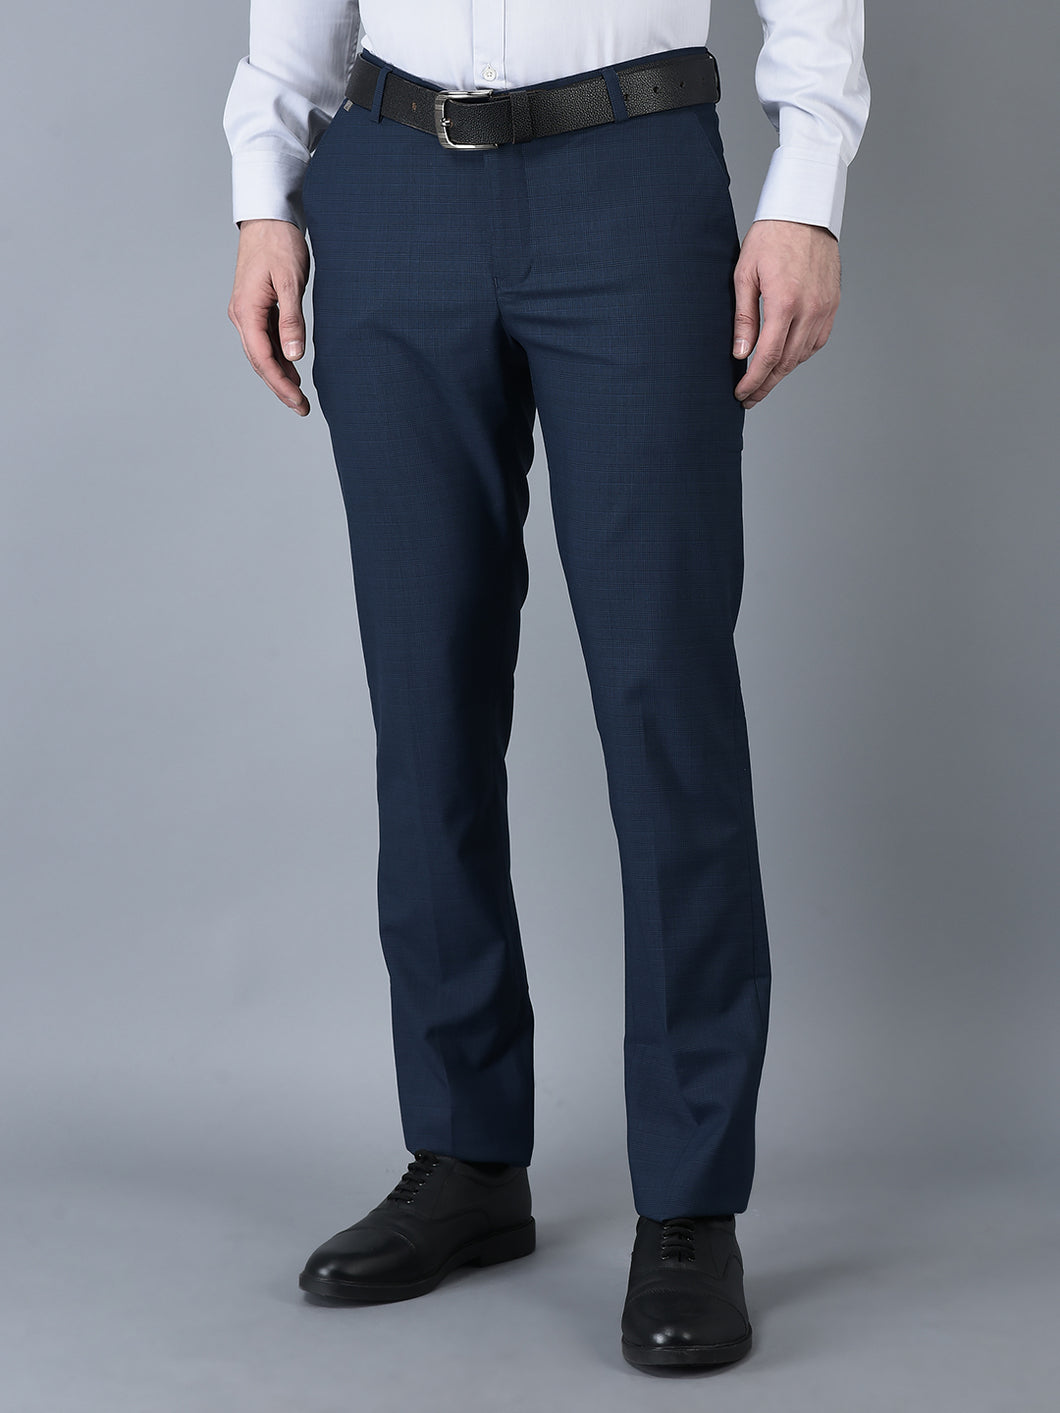 CANOE MEN Formal Trouser  BLUE Color